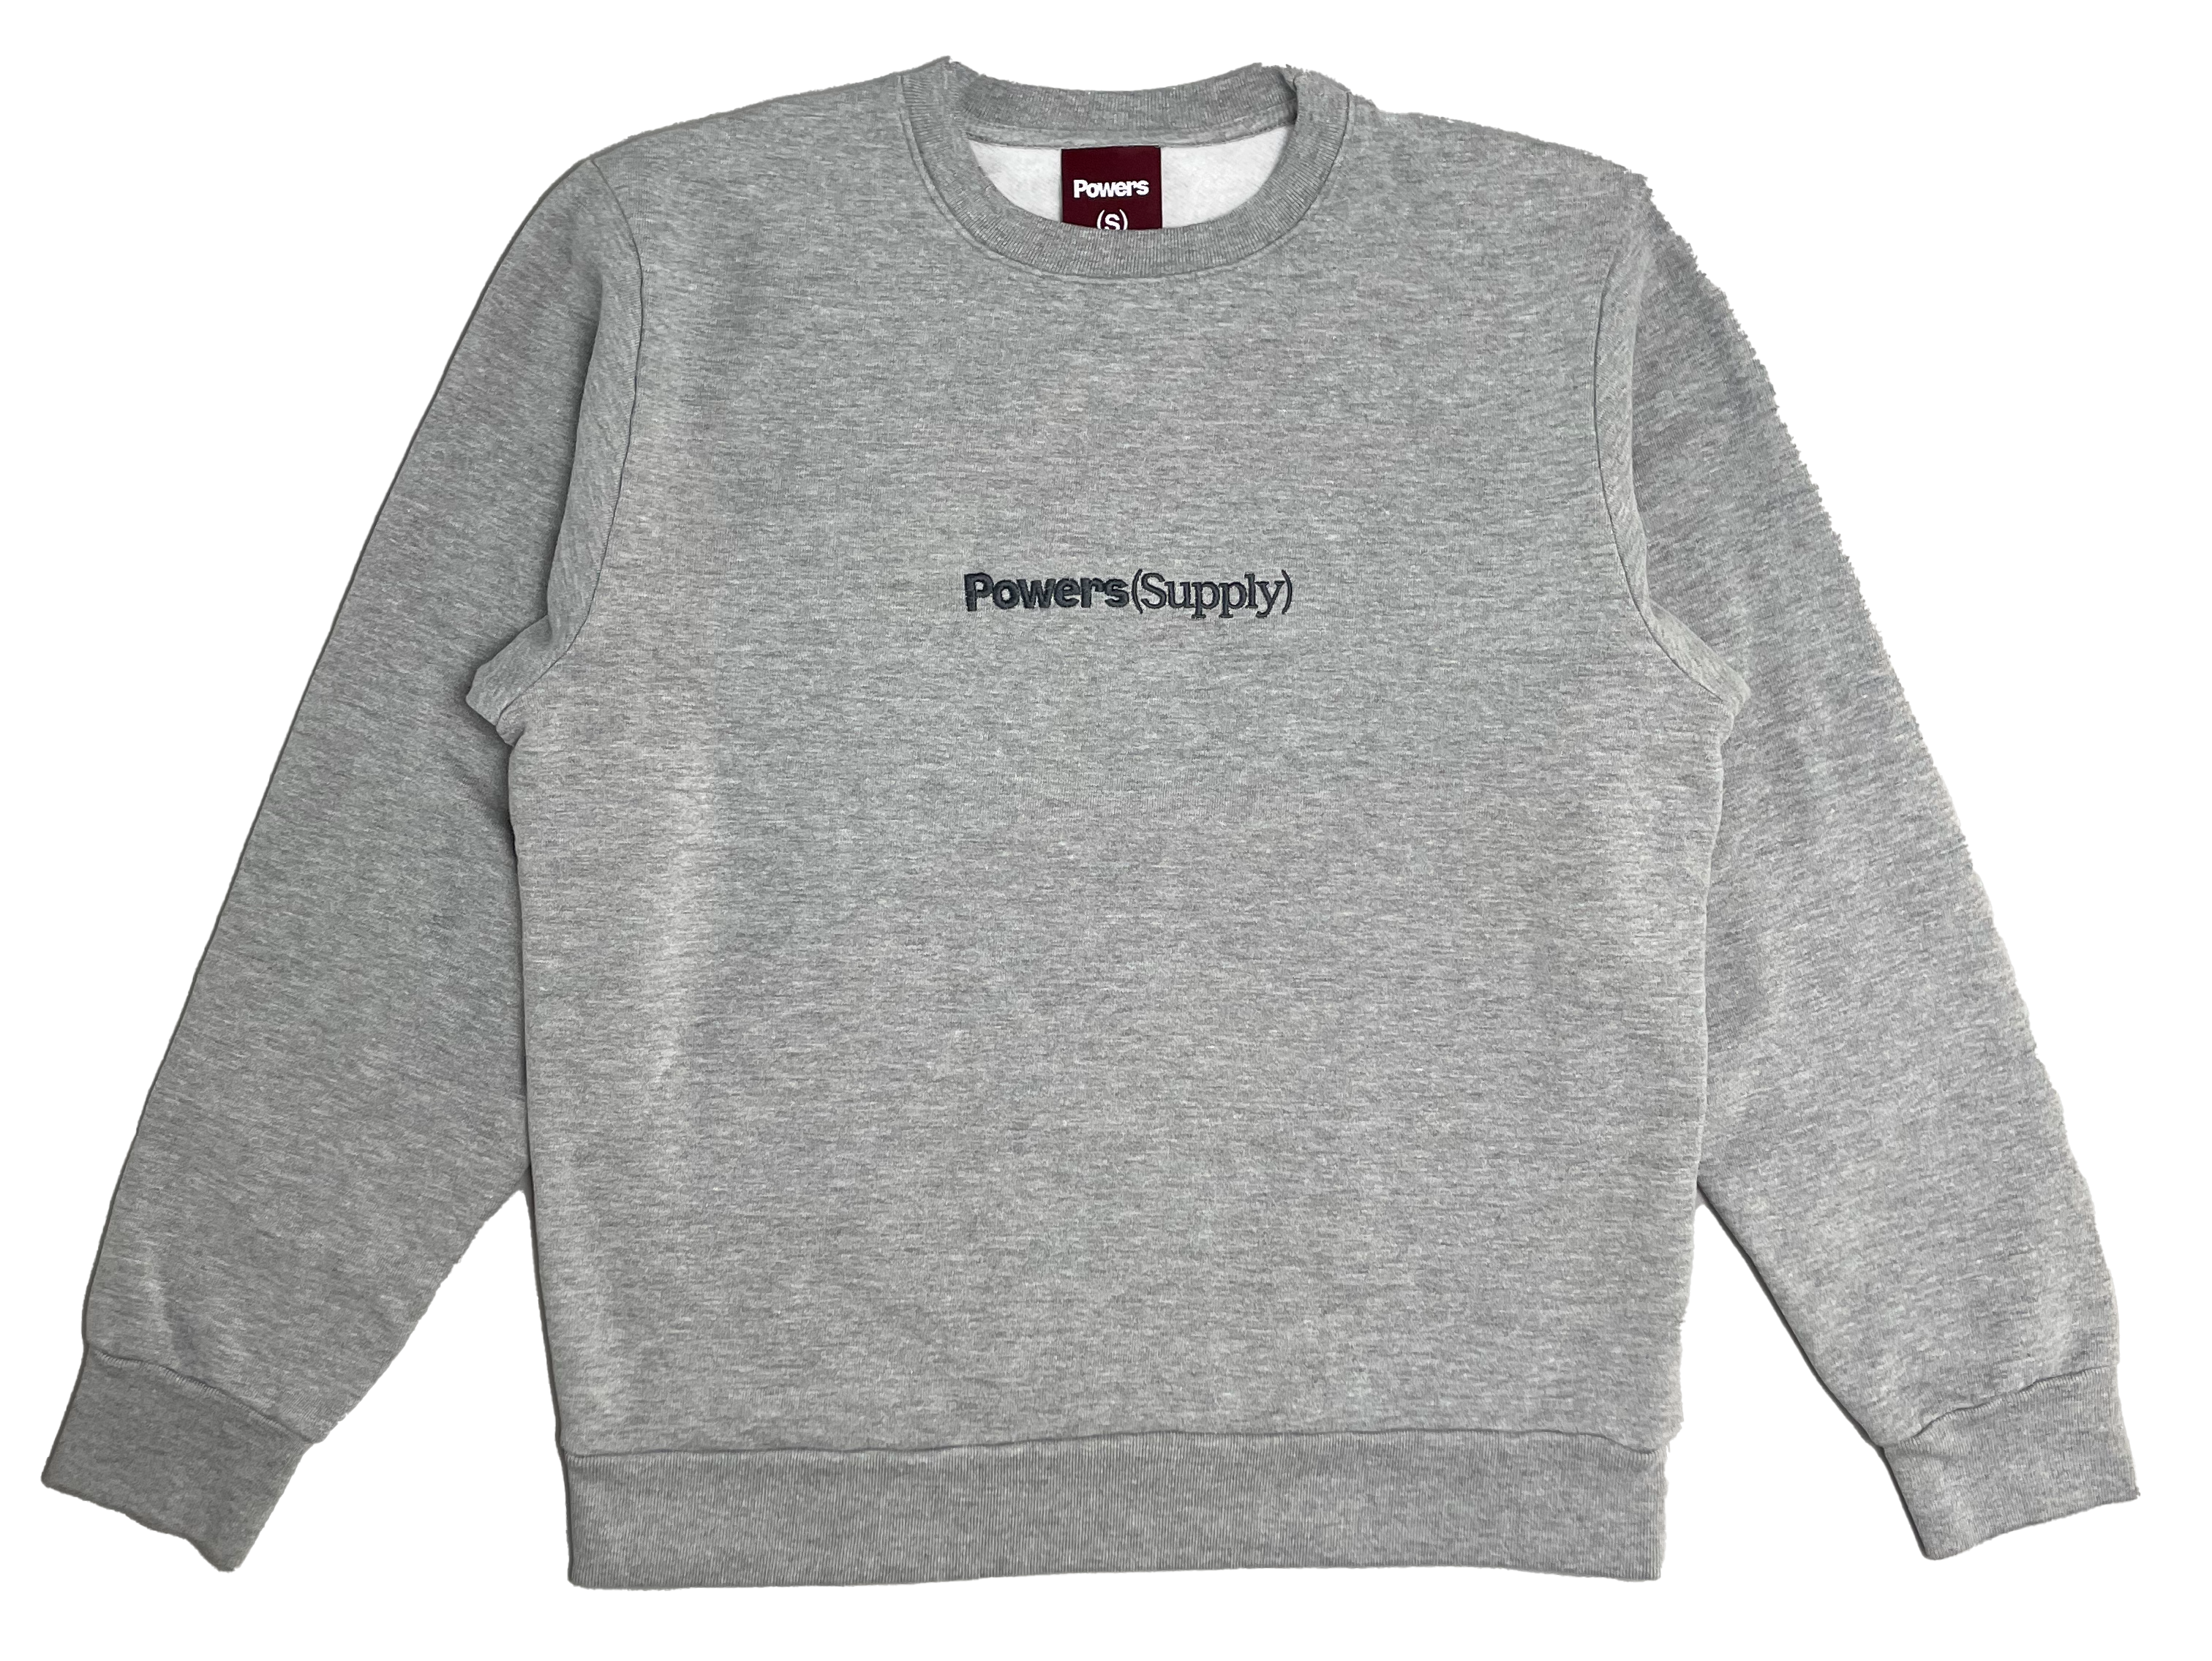 Powers Supply - Powers(Supply) New Logo Sweatshirt